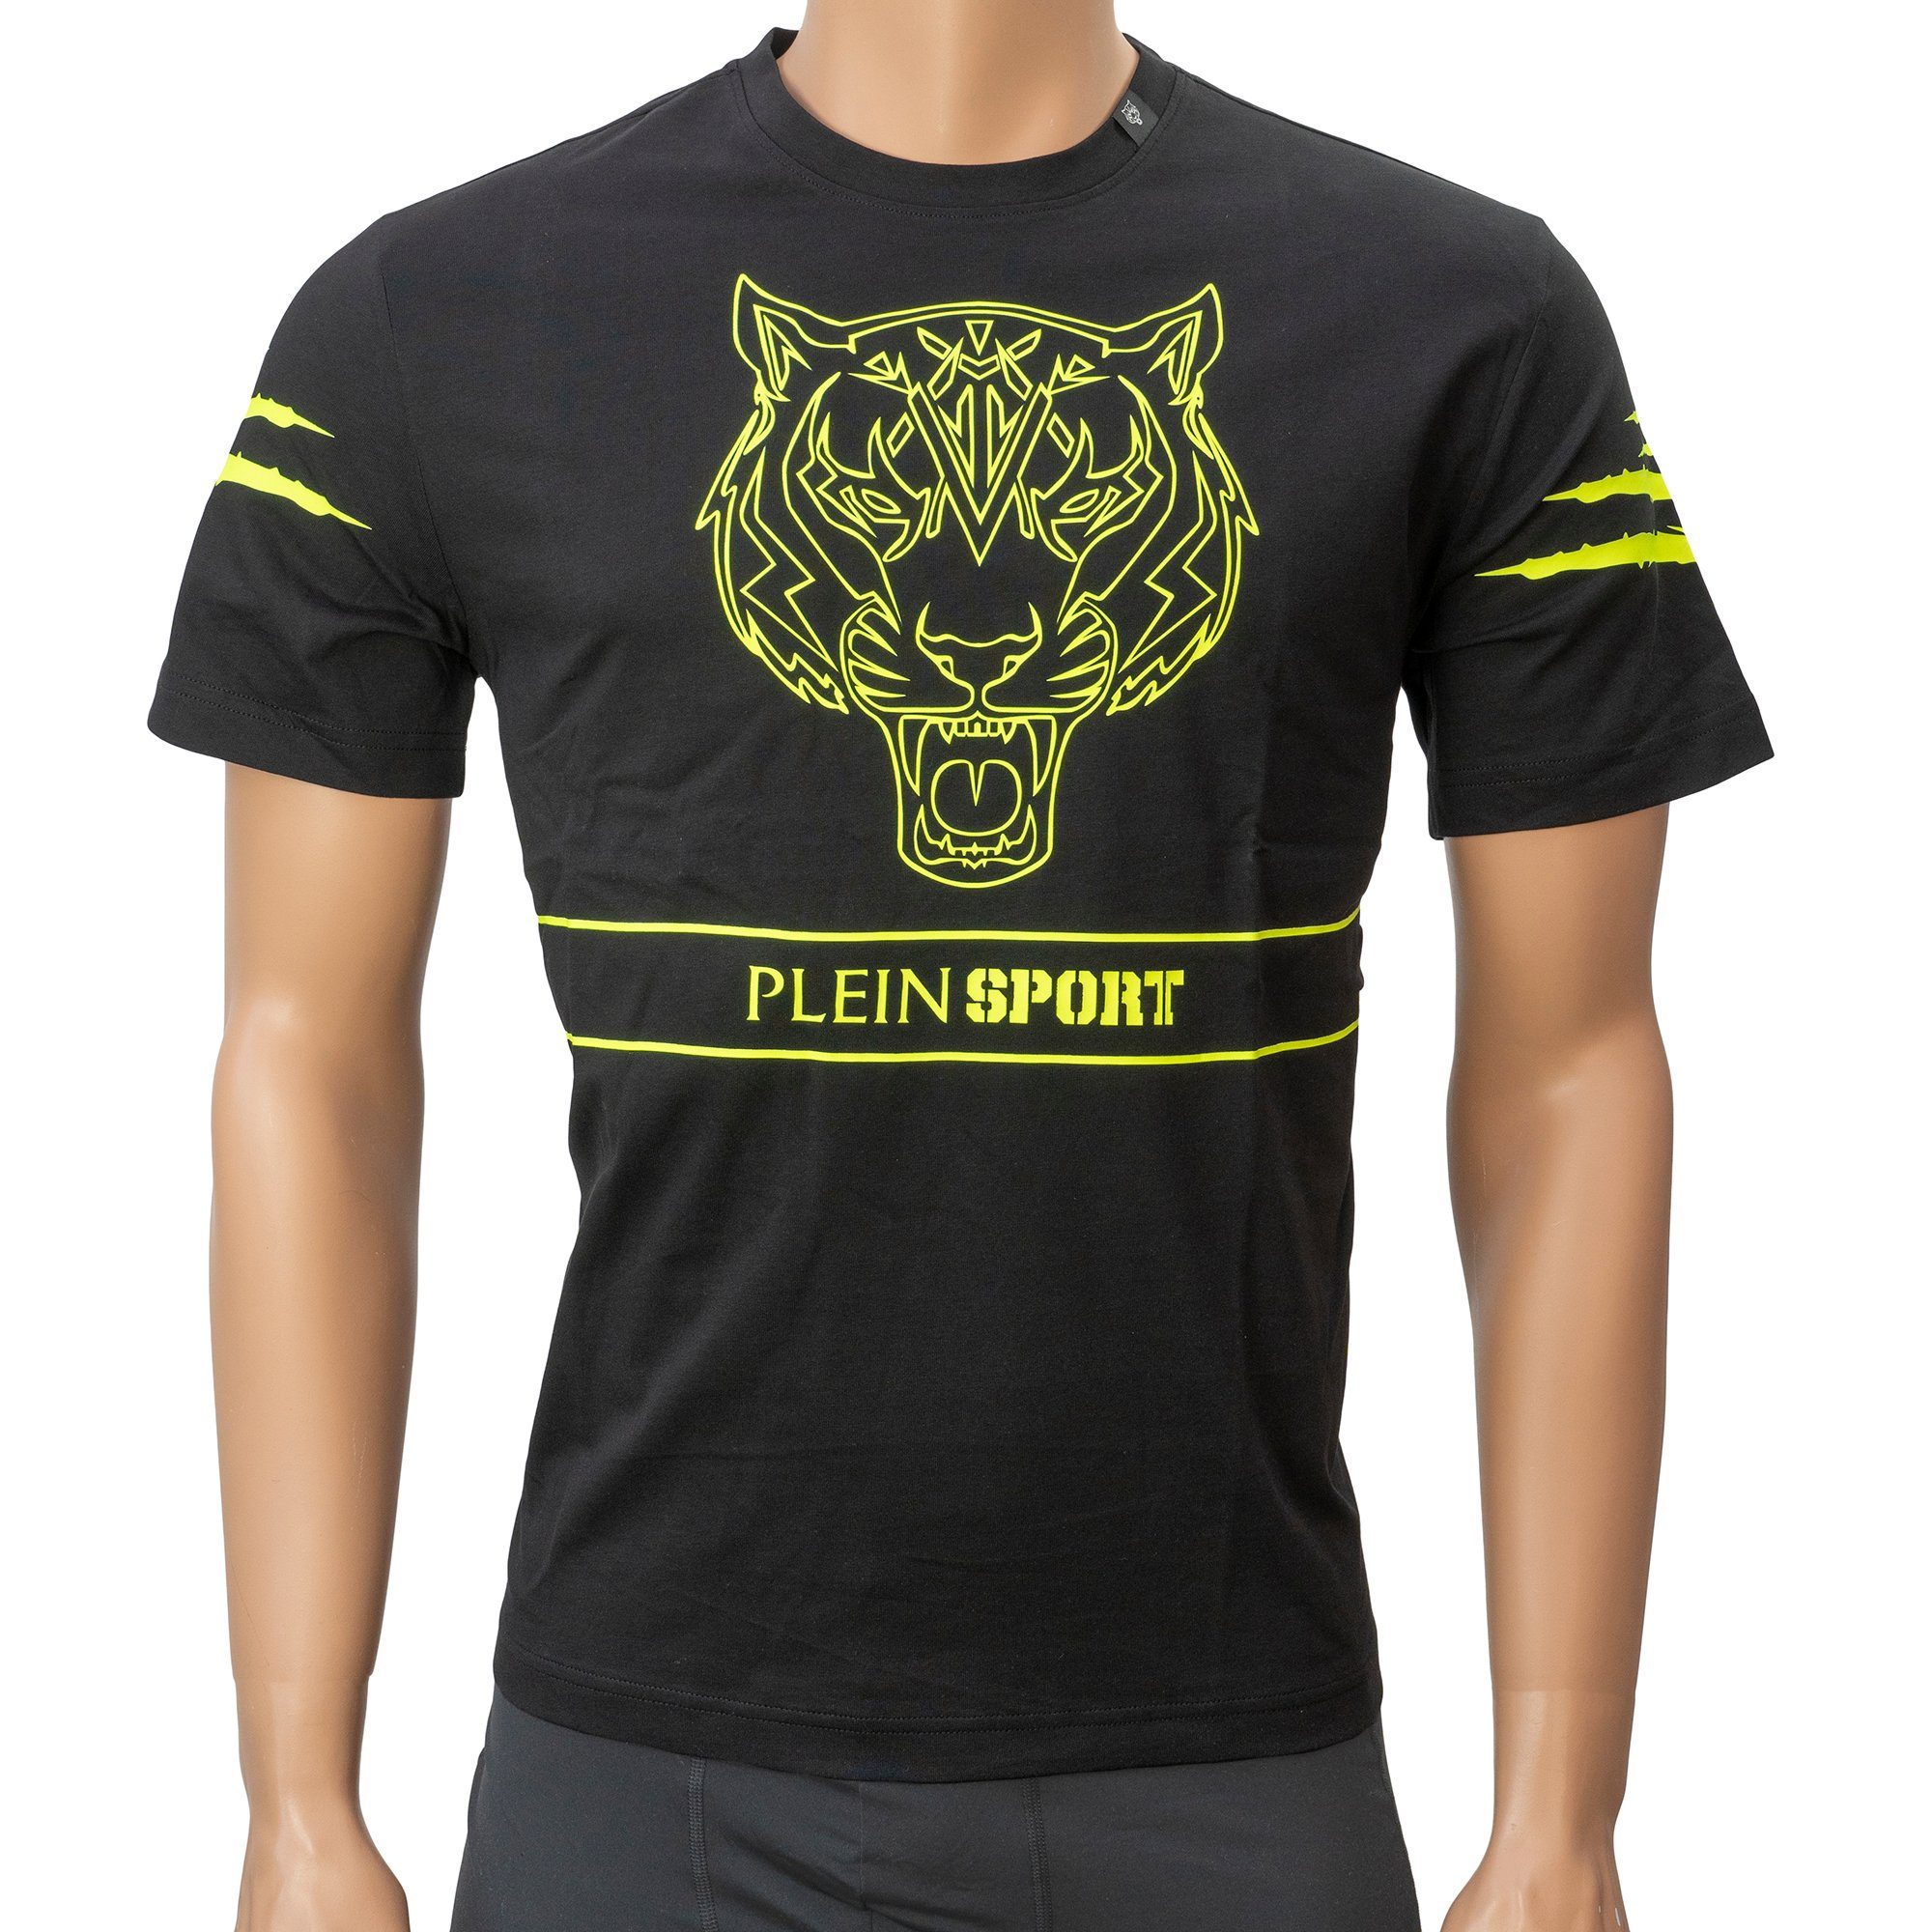 PLEIN SPORT T-Shirt TIPS102 Tiger-Motiv, by Philipp Plein